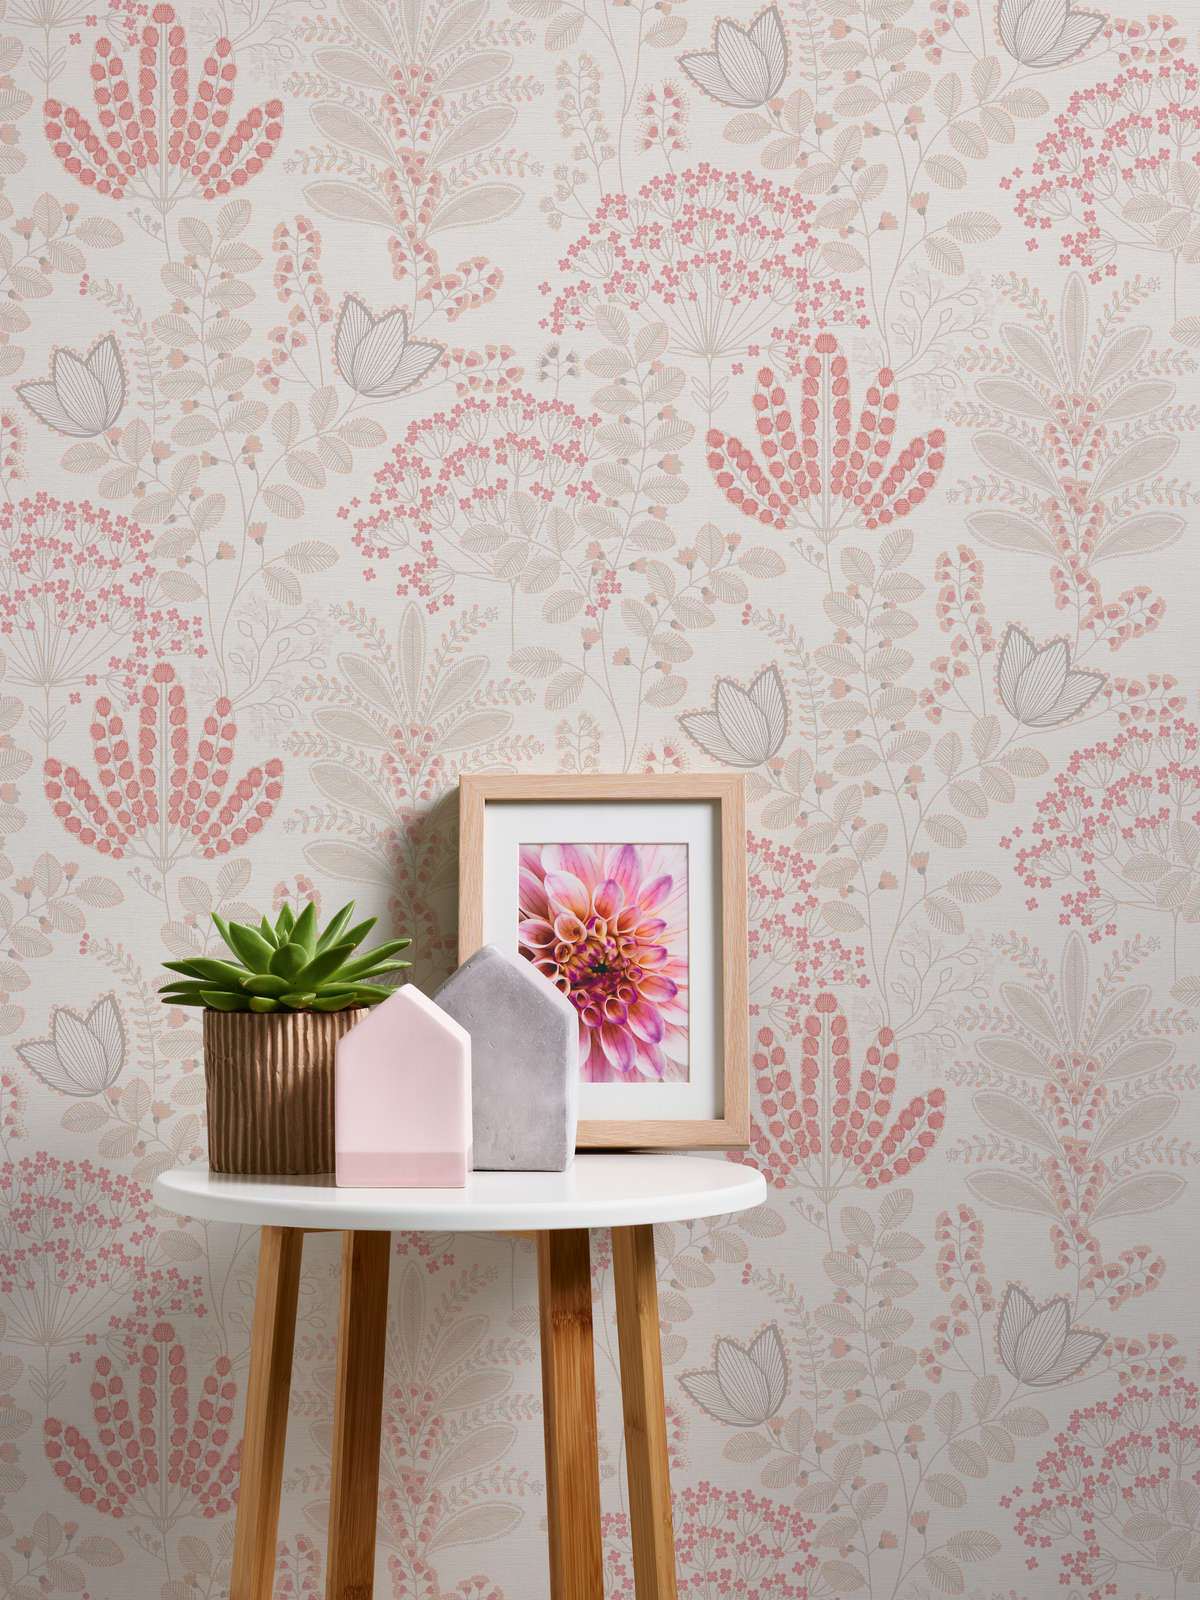             Florale Tapete mit Blättern im Retro-Design leicht strukturiert, matt – Weiß, Taupe, Rosa
        